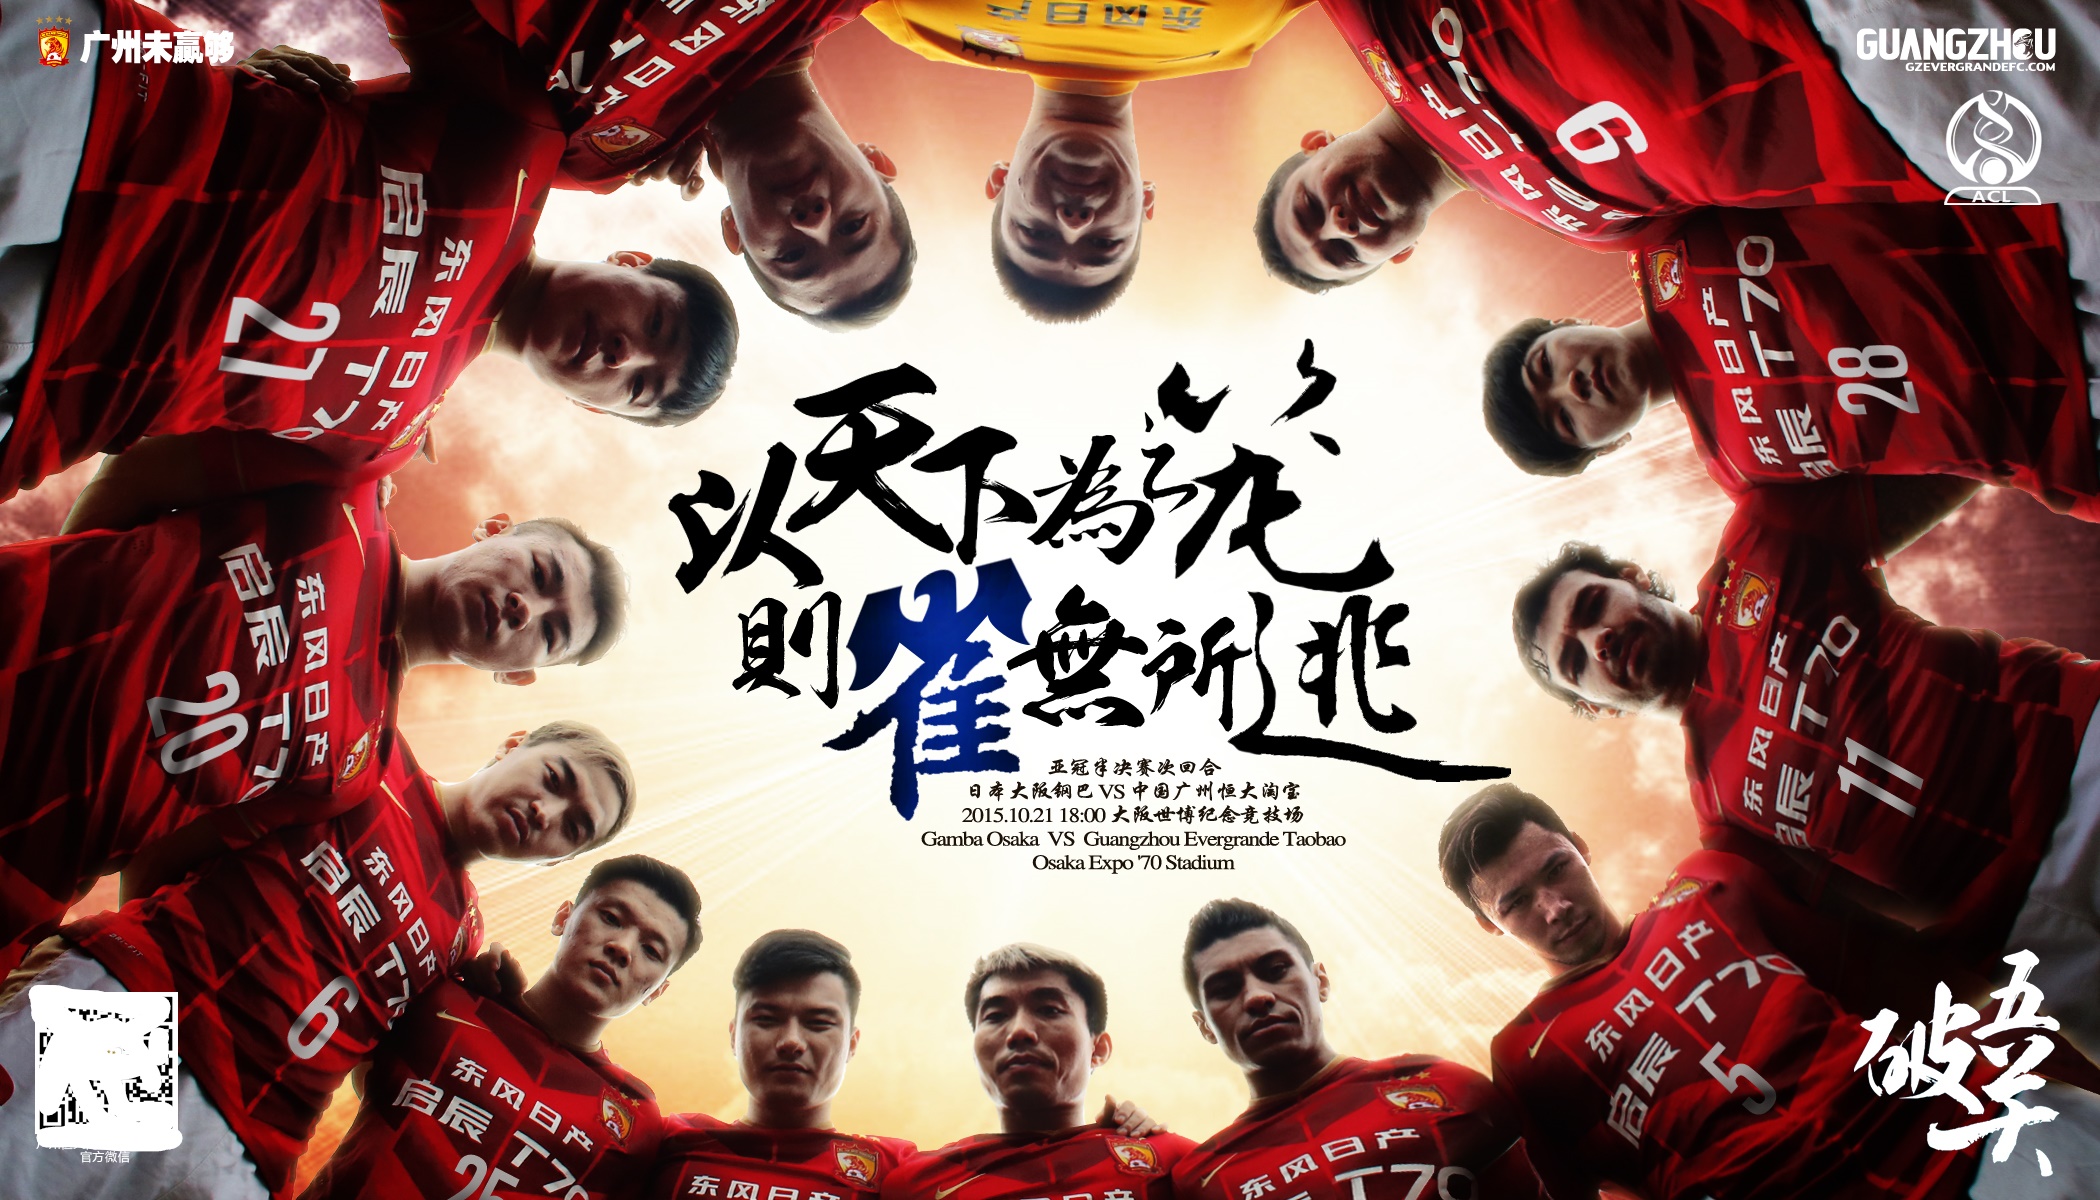 俱乐部世界杯恒大2015赛程（三年二次夺亚冠冠军的广州恒大2015年亚冠夺冠历程-海报回顾）